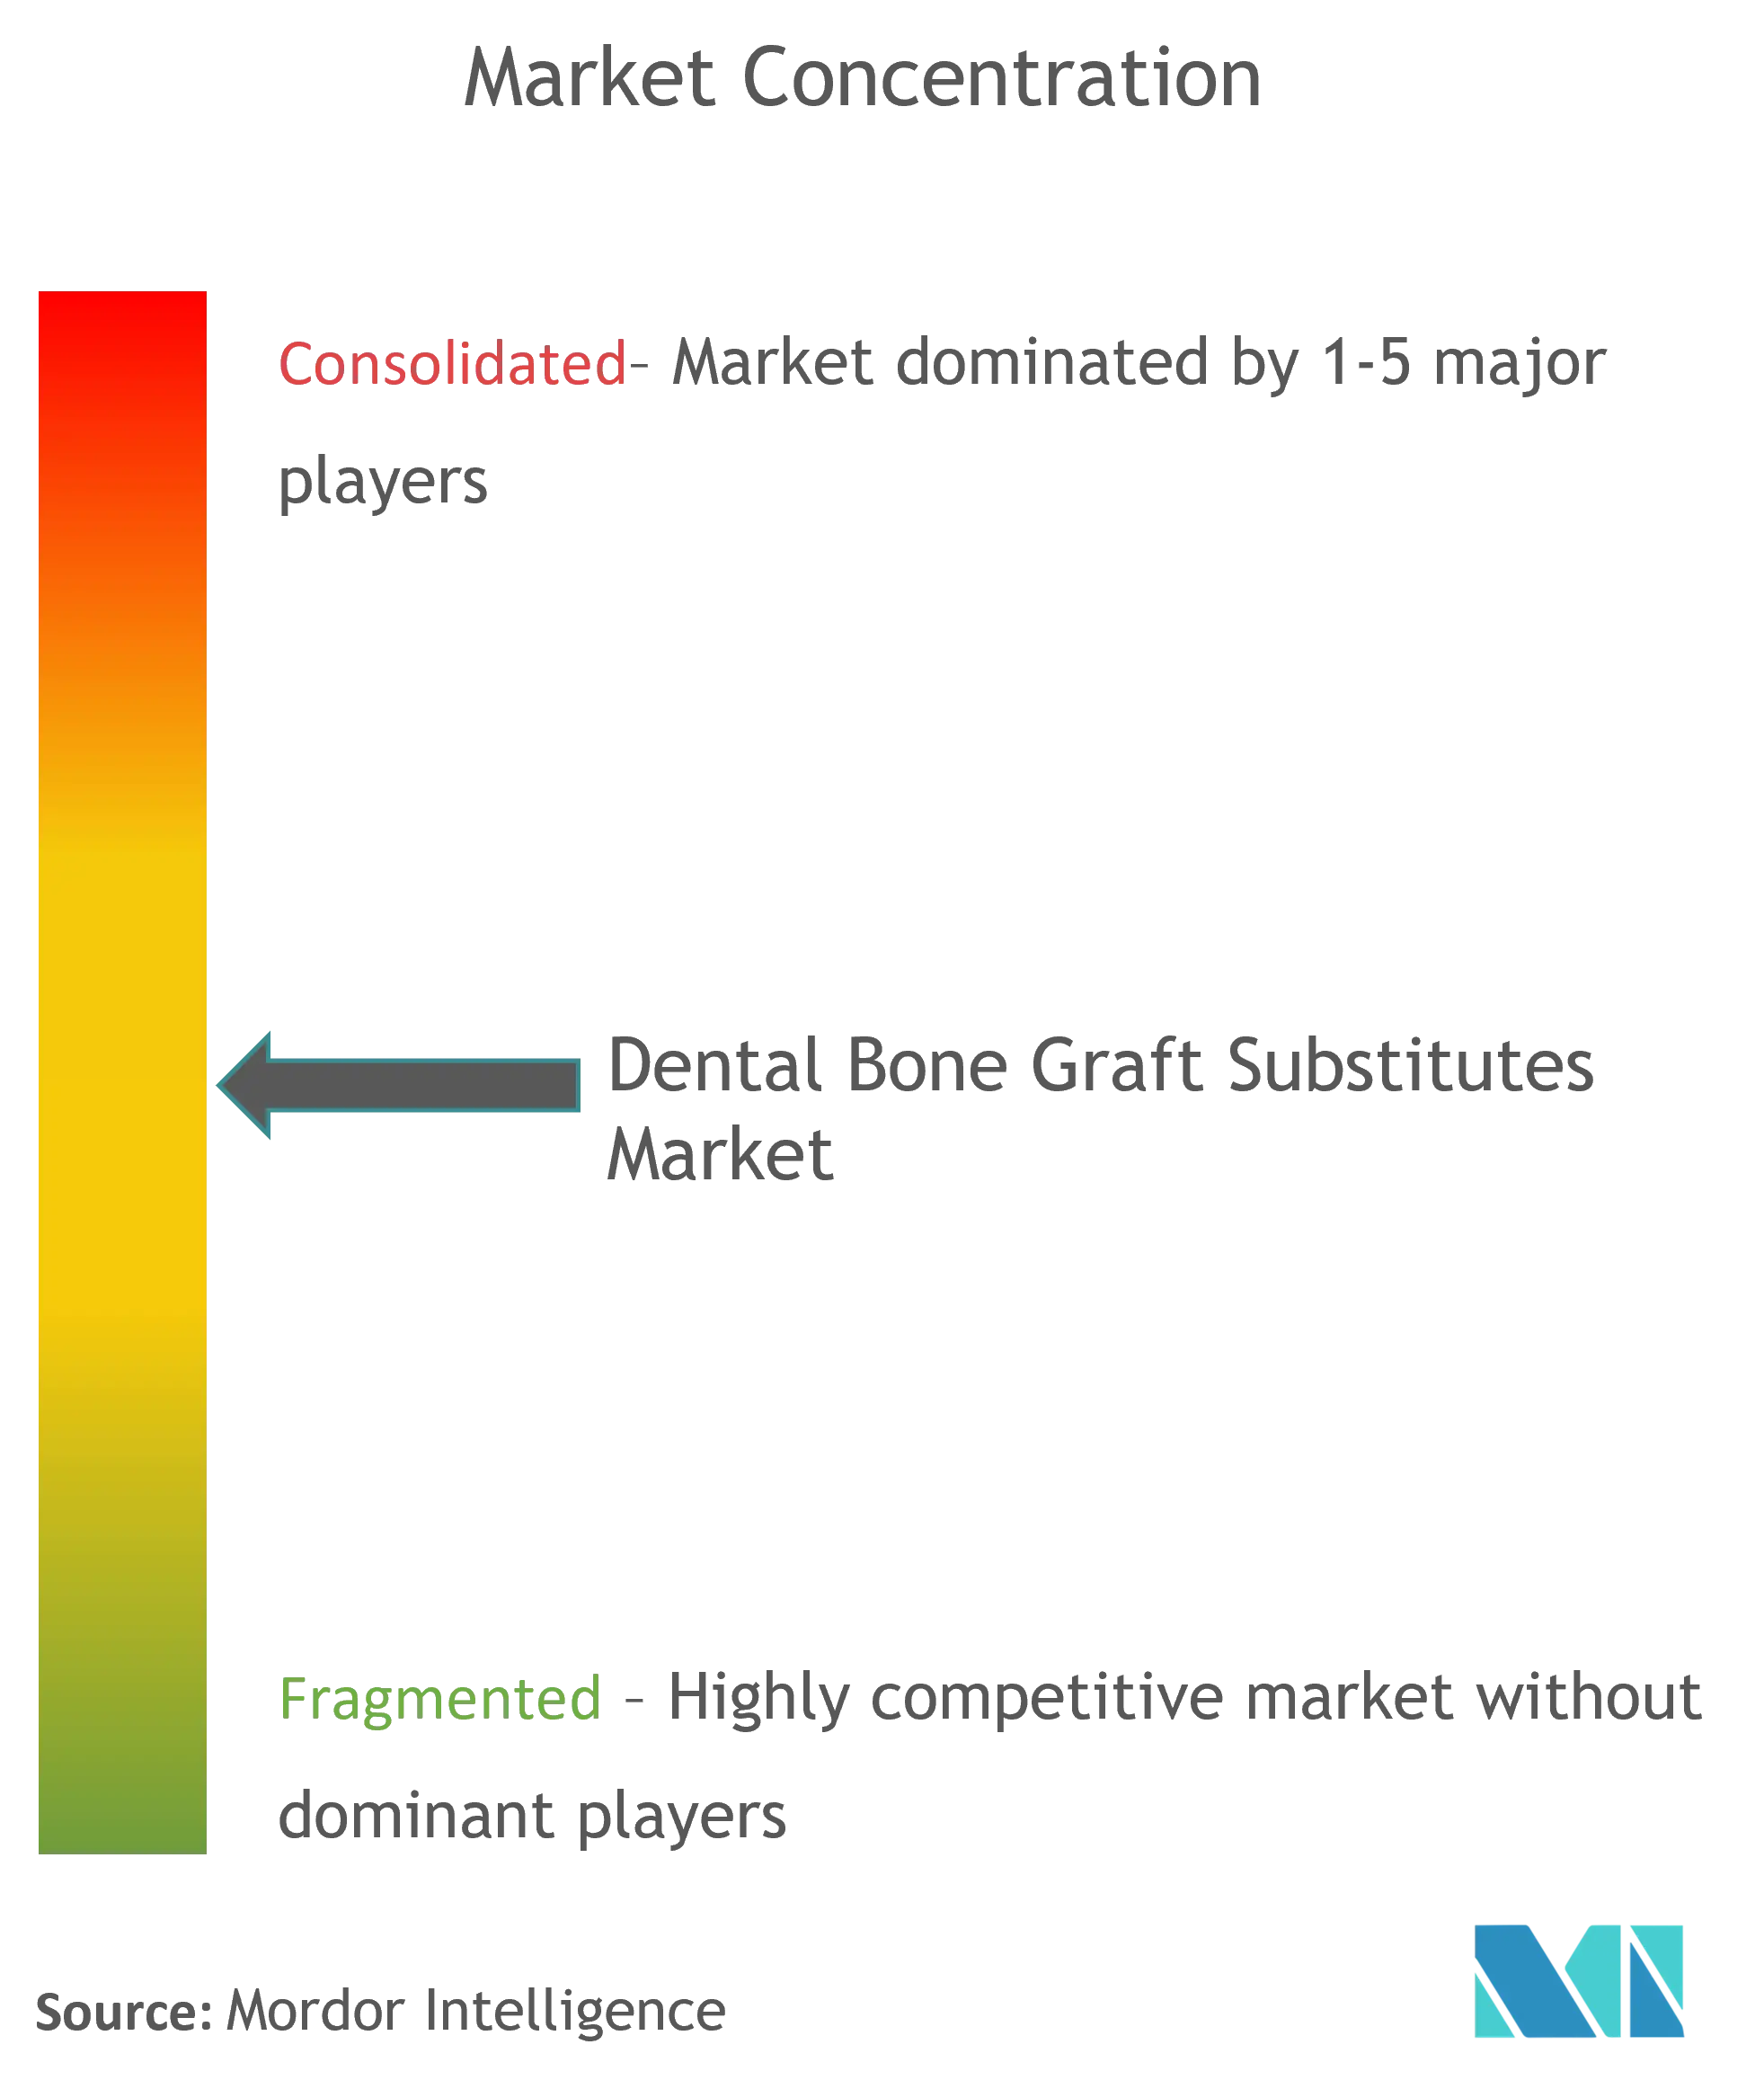 Dental Bone Graft Substitutes Market.png